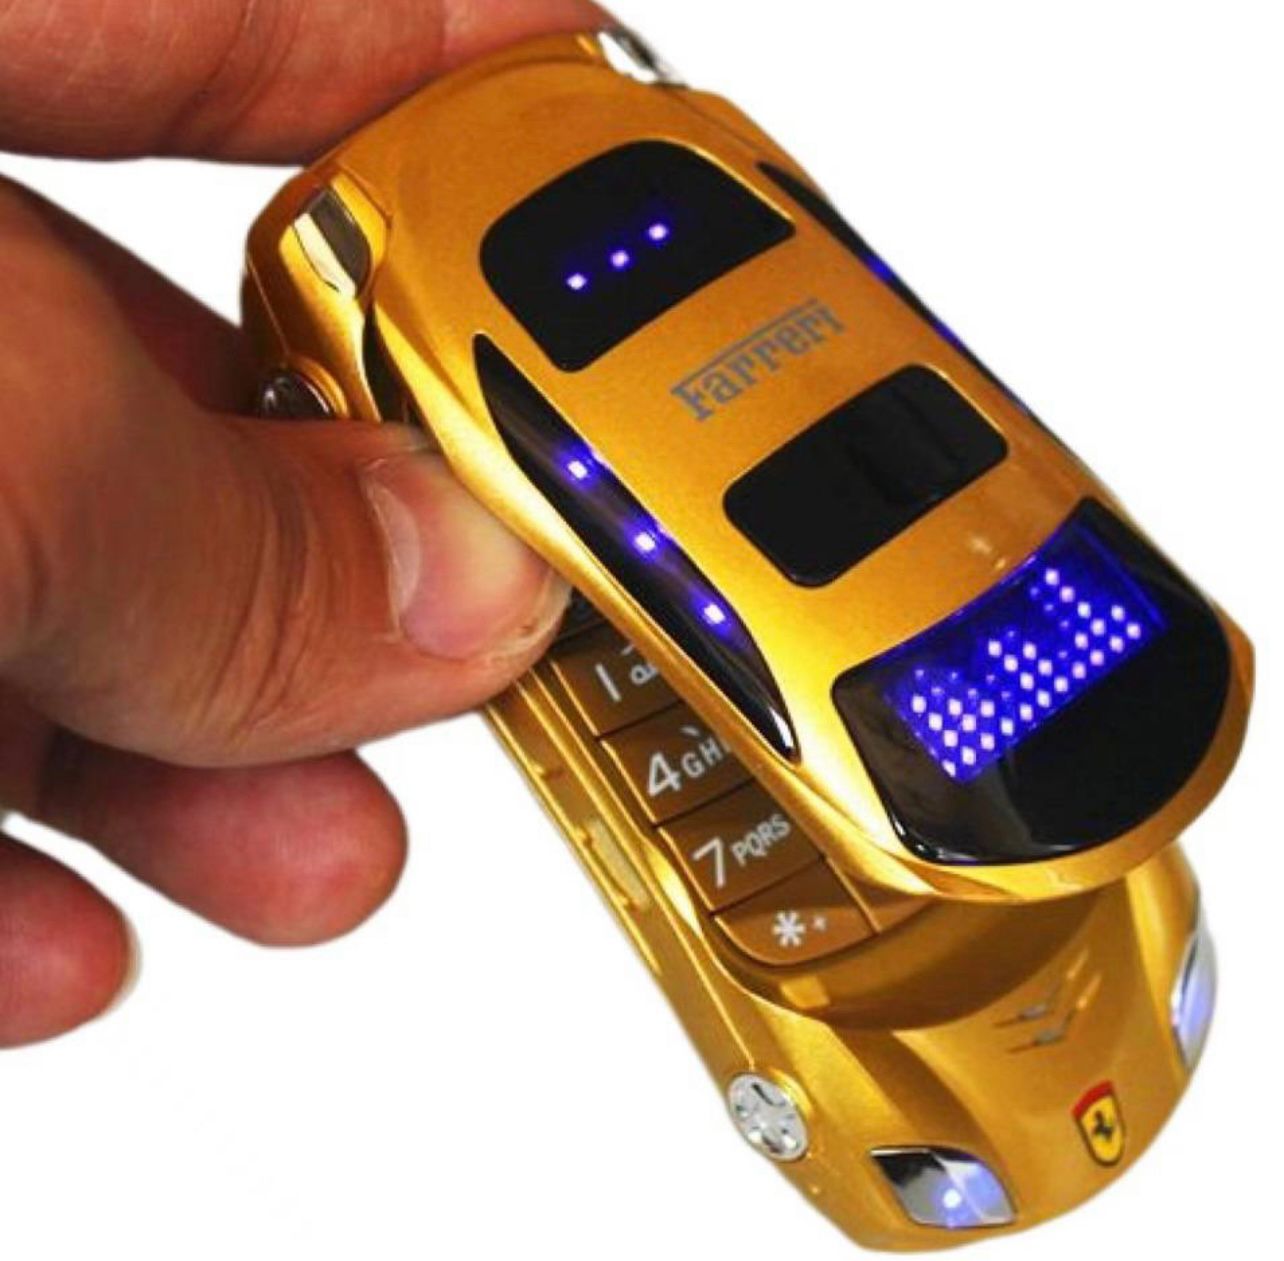 Раскладной телефон в виде Машинки Sebar золотой цвет, купить в Москве, цены  в интернет-магазинах на Мегамаркет